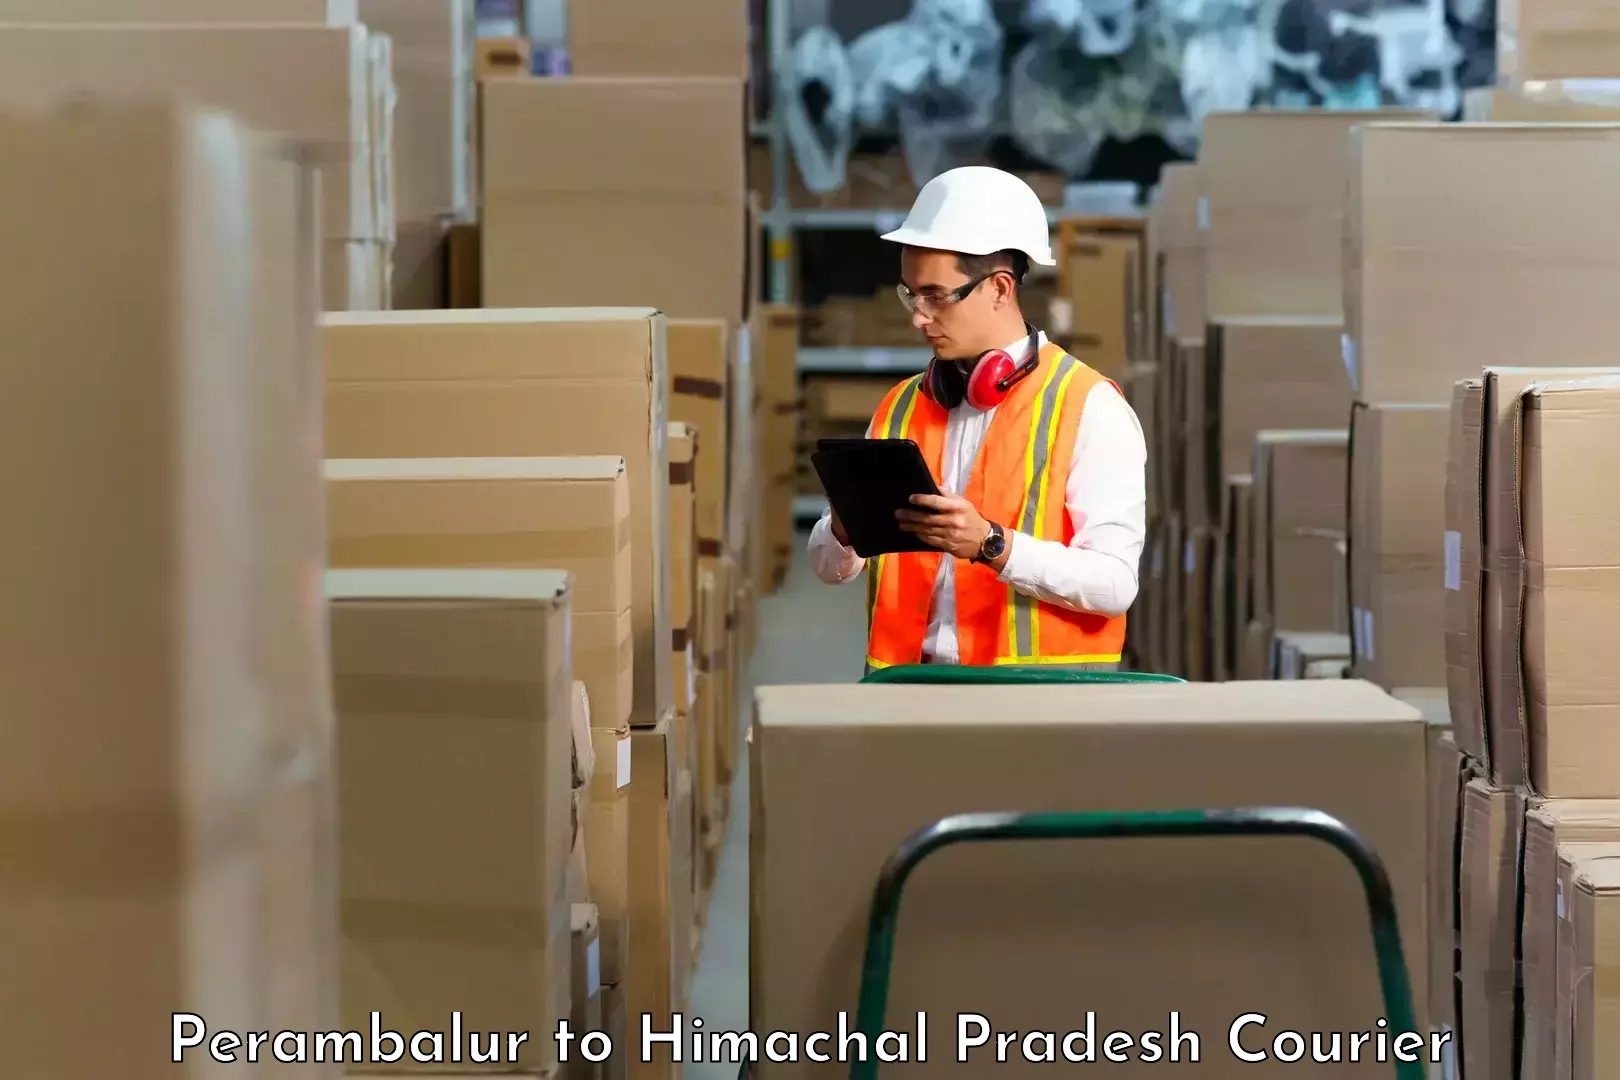 Professional courier services Perambalur to Jaisinghpur